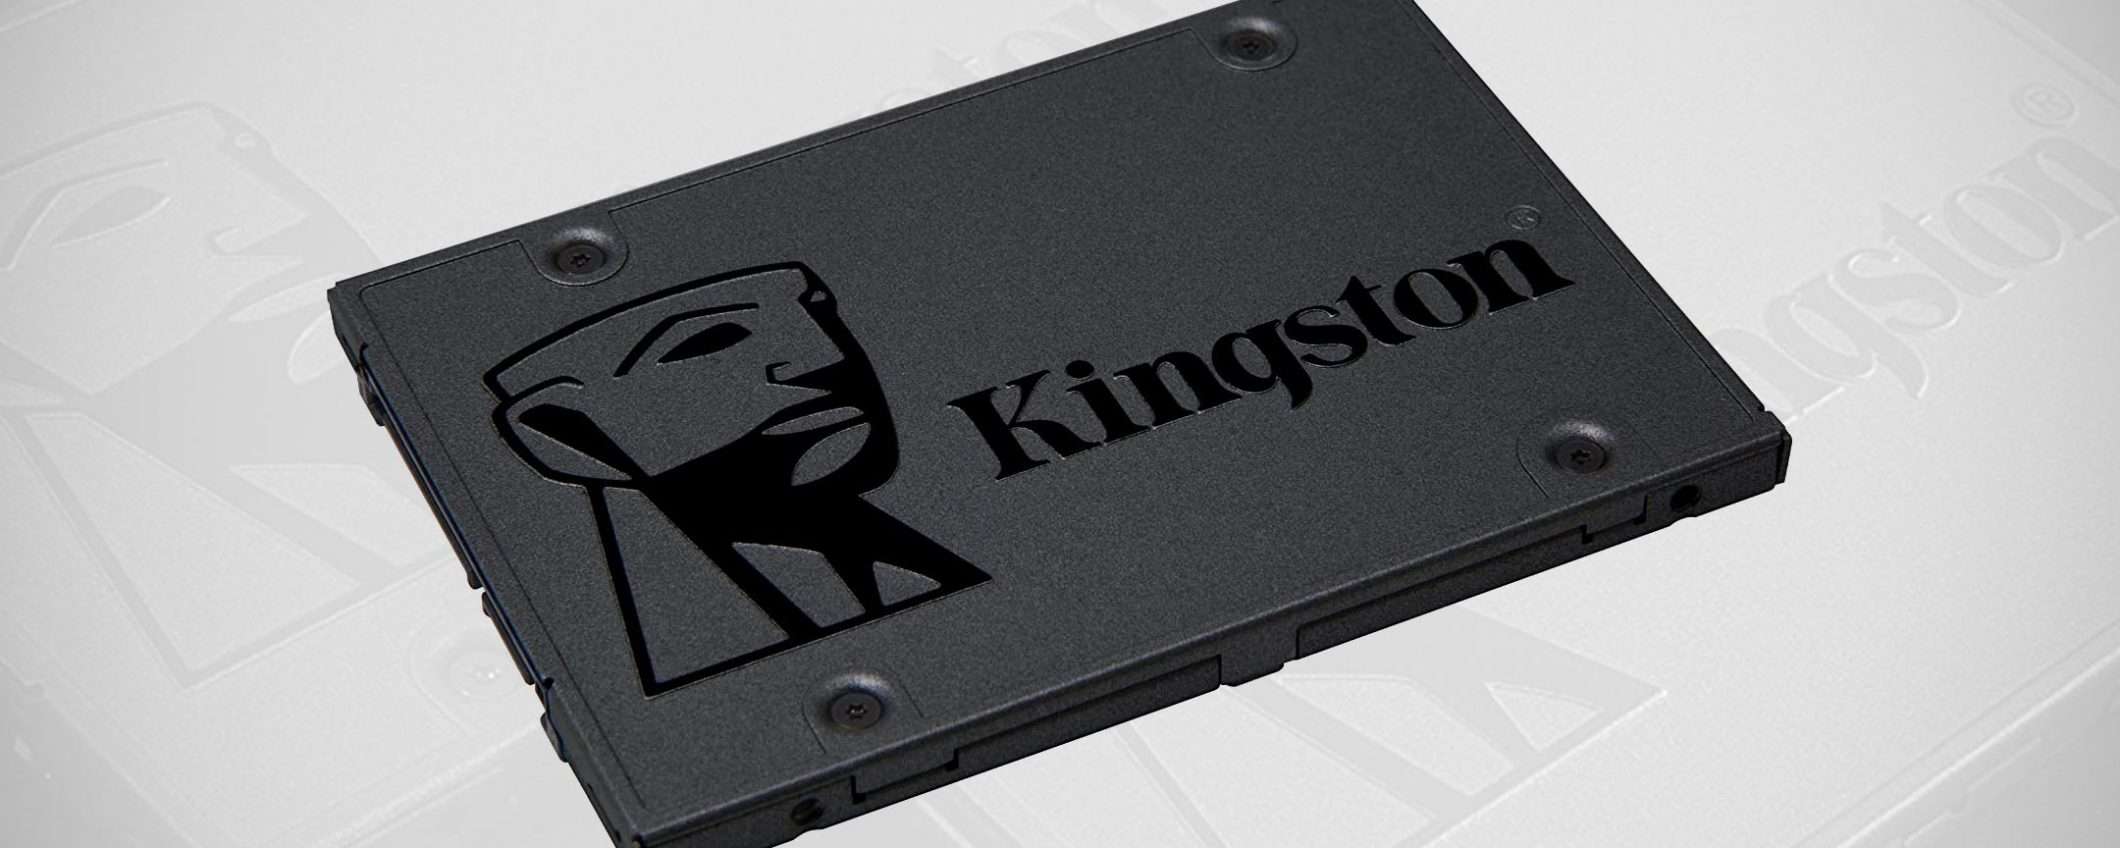 La SSD A400 di Kingston da 240 GB su Amazon a -48%